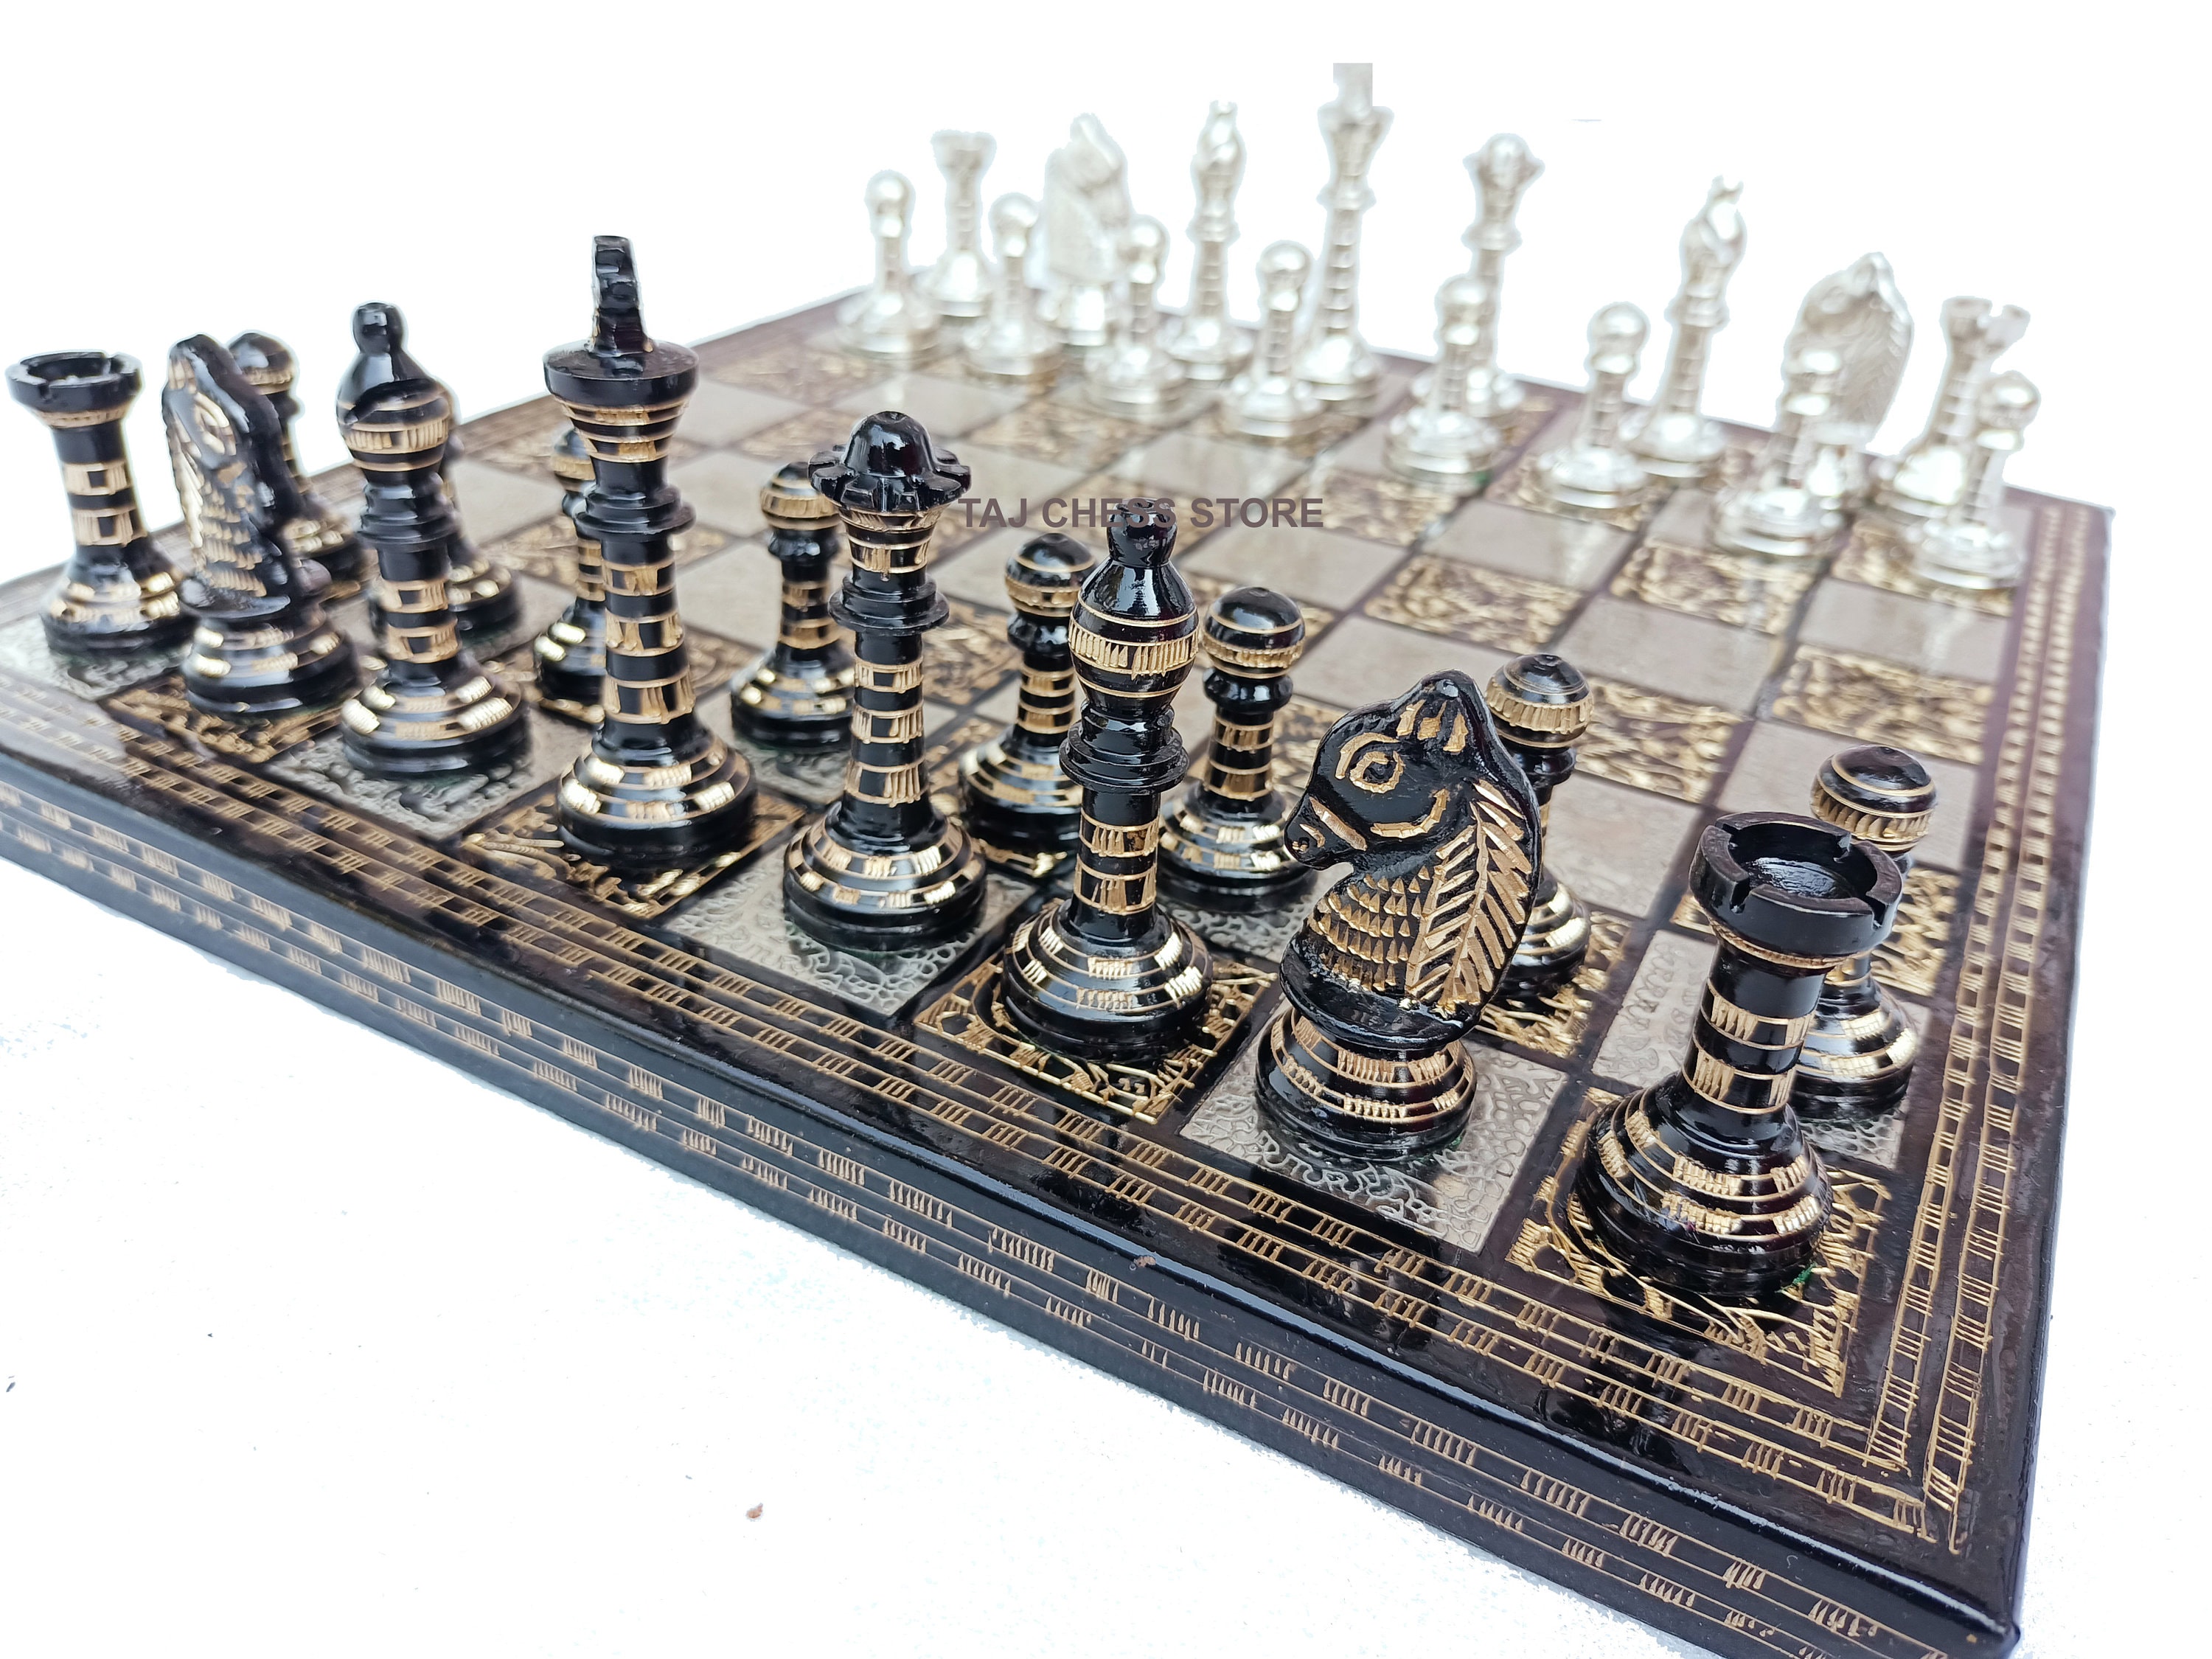 Taj Chess Store